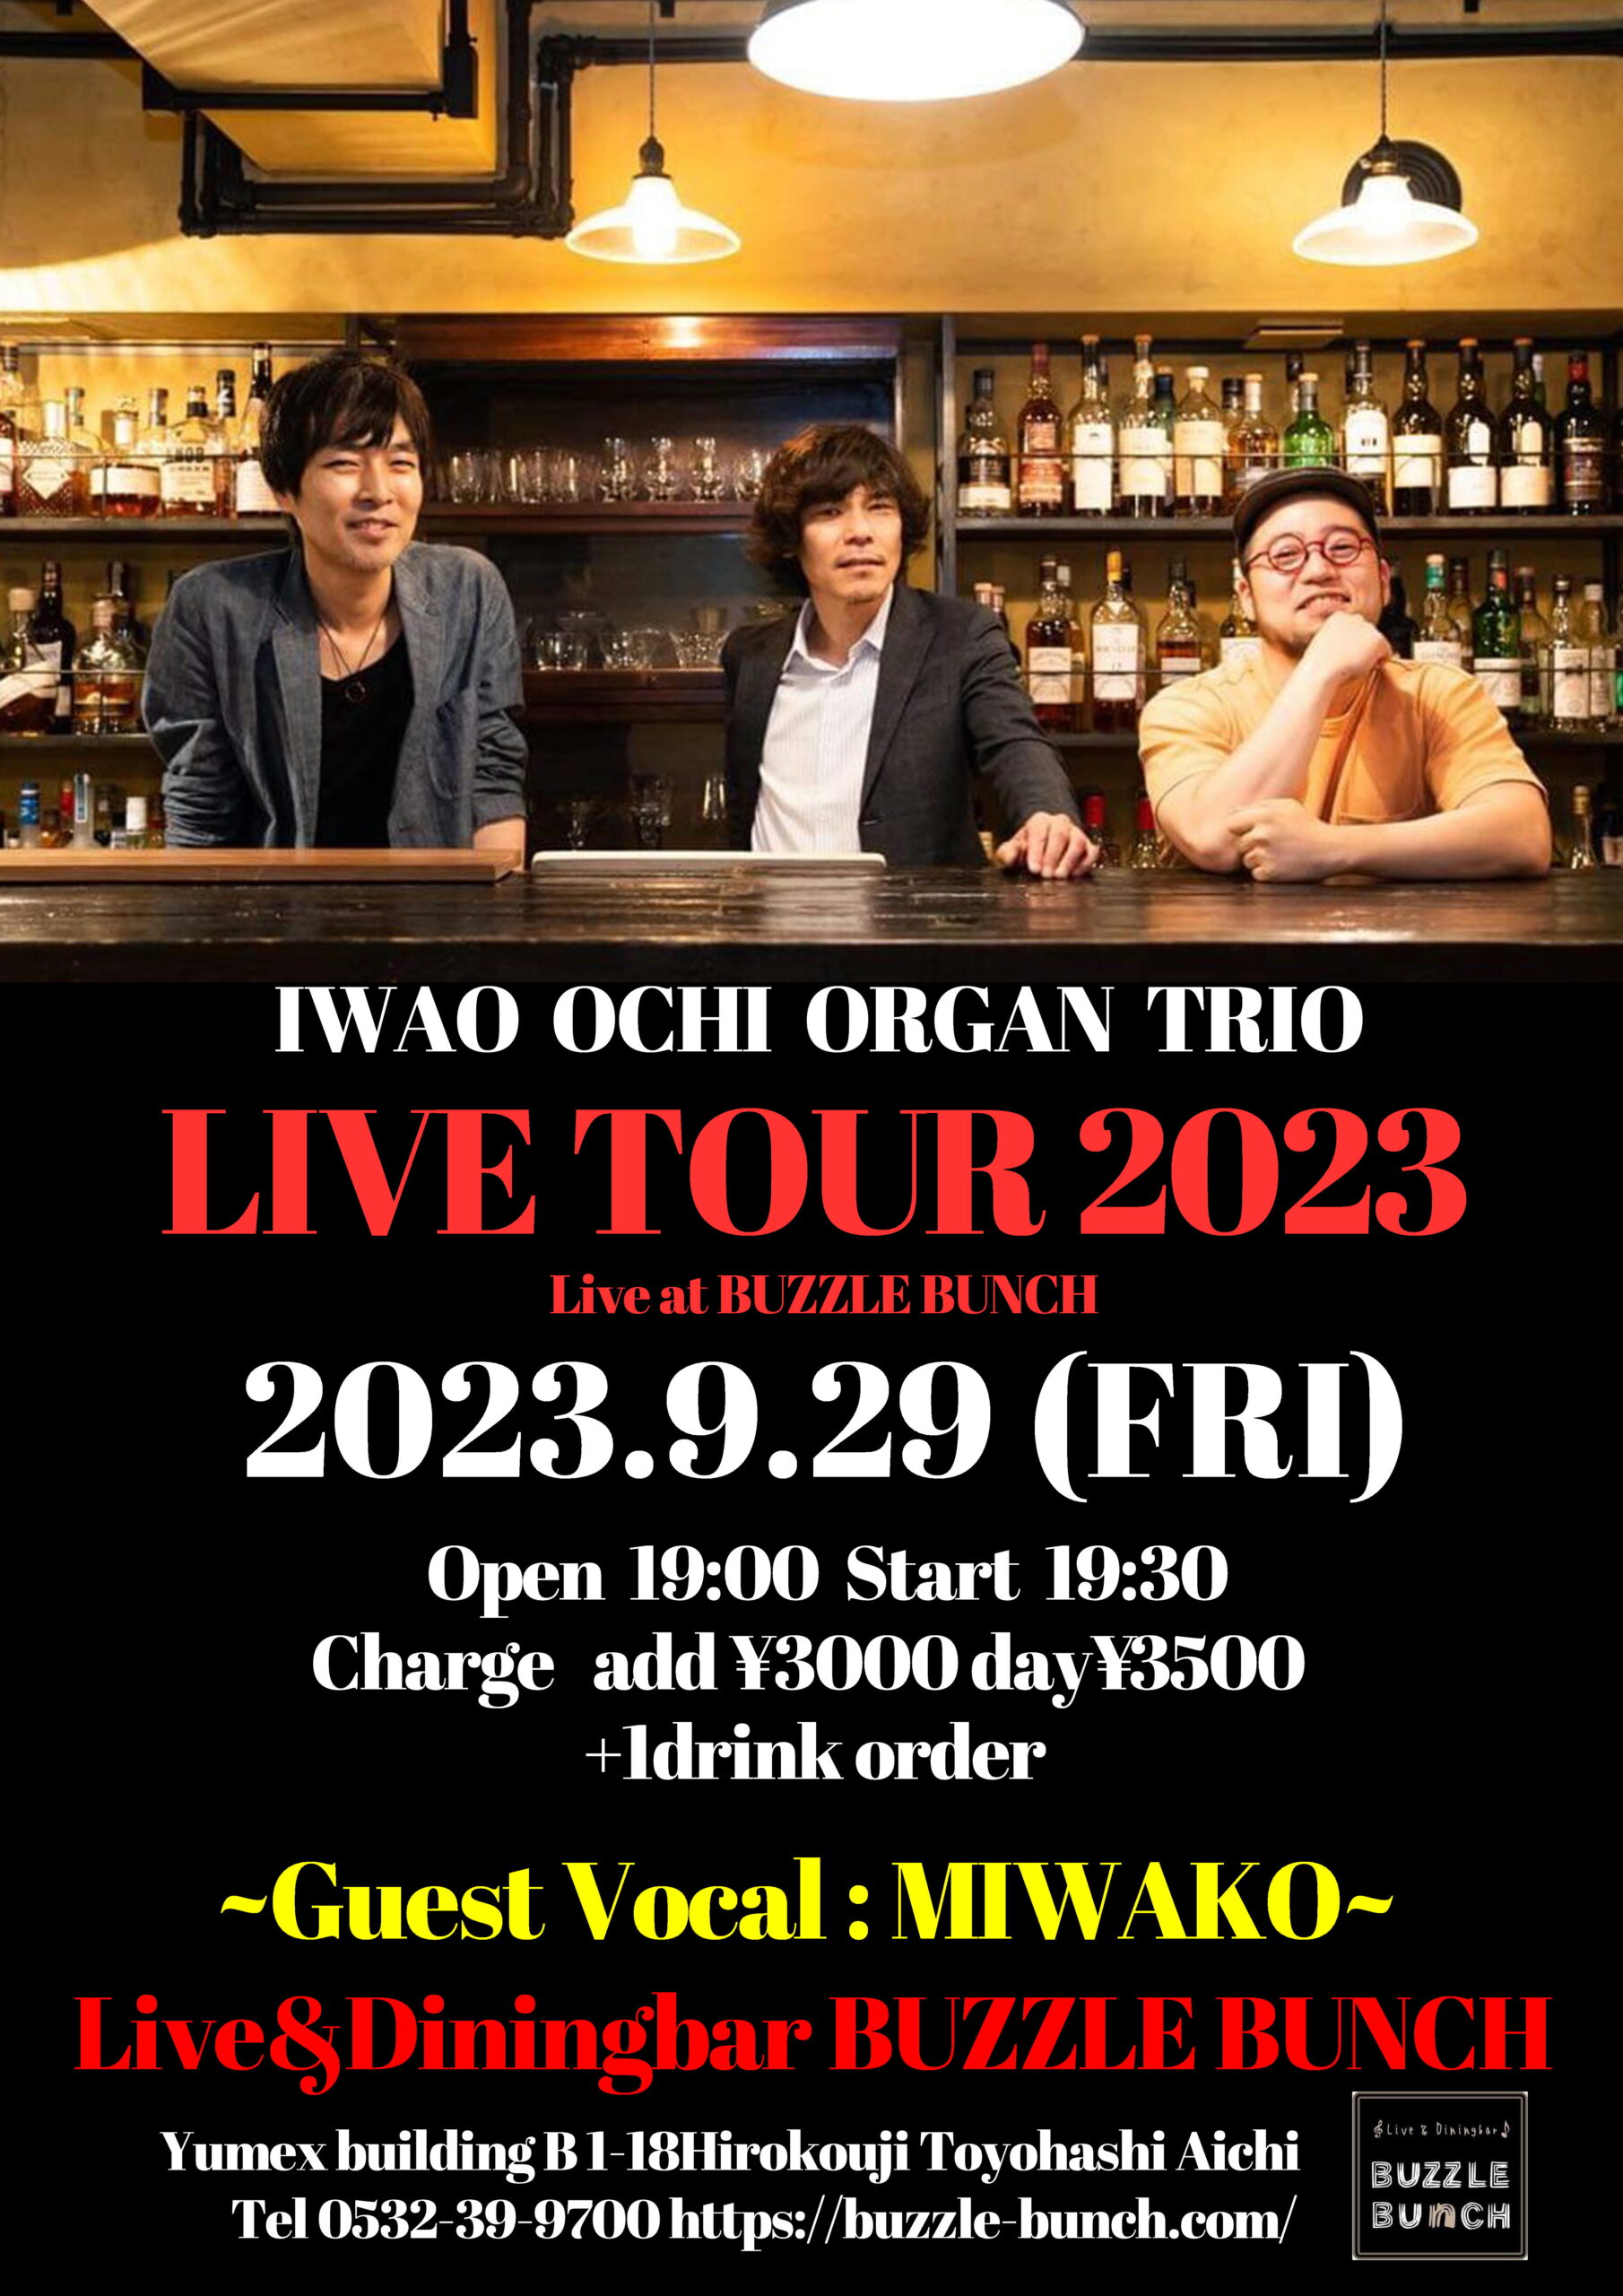 2023年9月29日(Fri) IWAO OCHI ORGAN TRIO LIVE TOUR 2023 at BUZZLE BUNCH